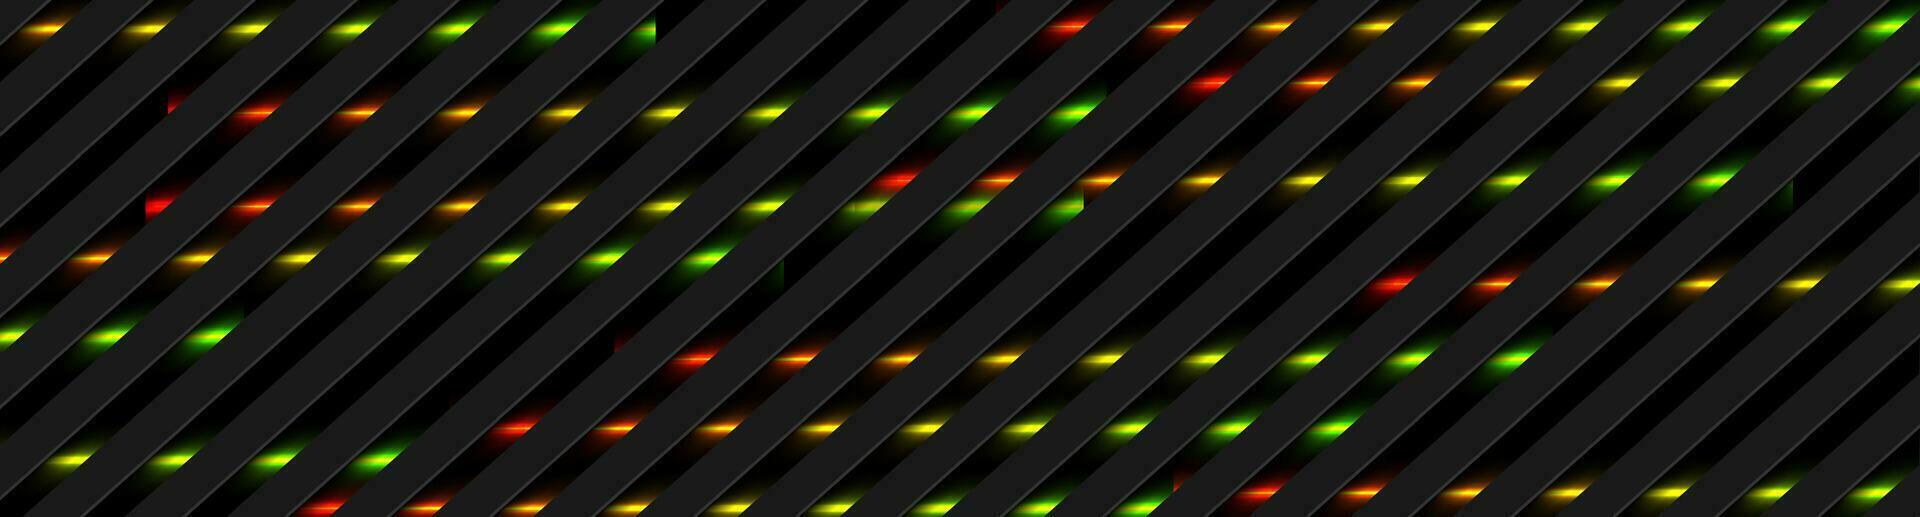 abstrait noir rayures avec vert rouge néon embrasé lumière vecteur